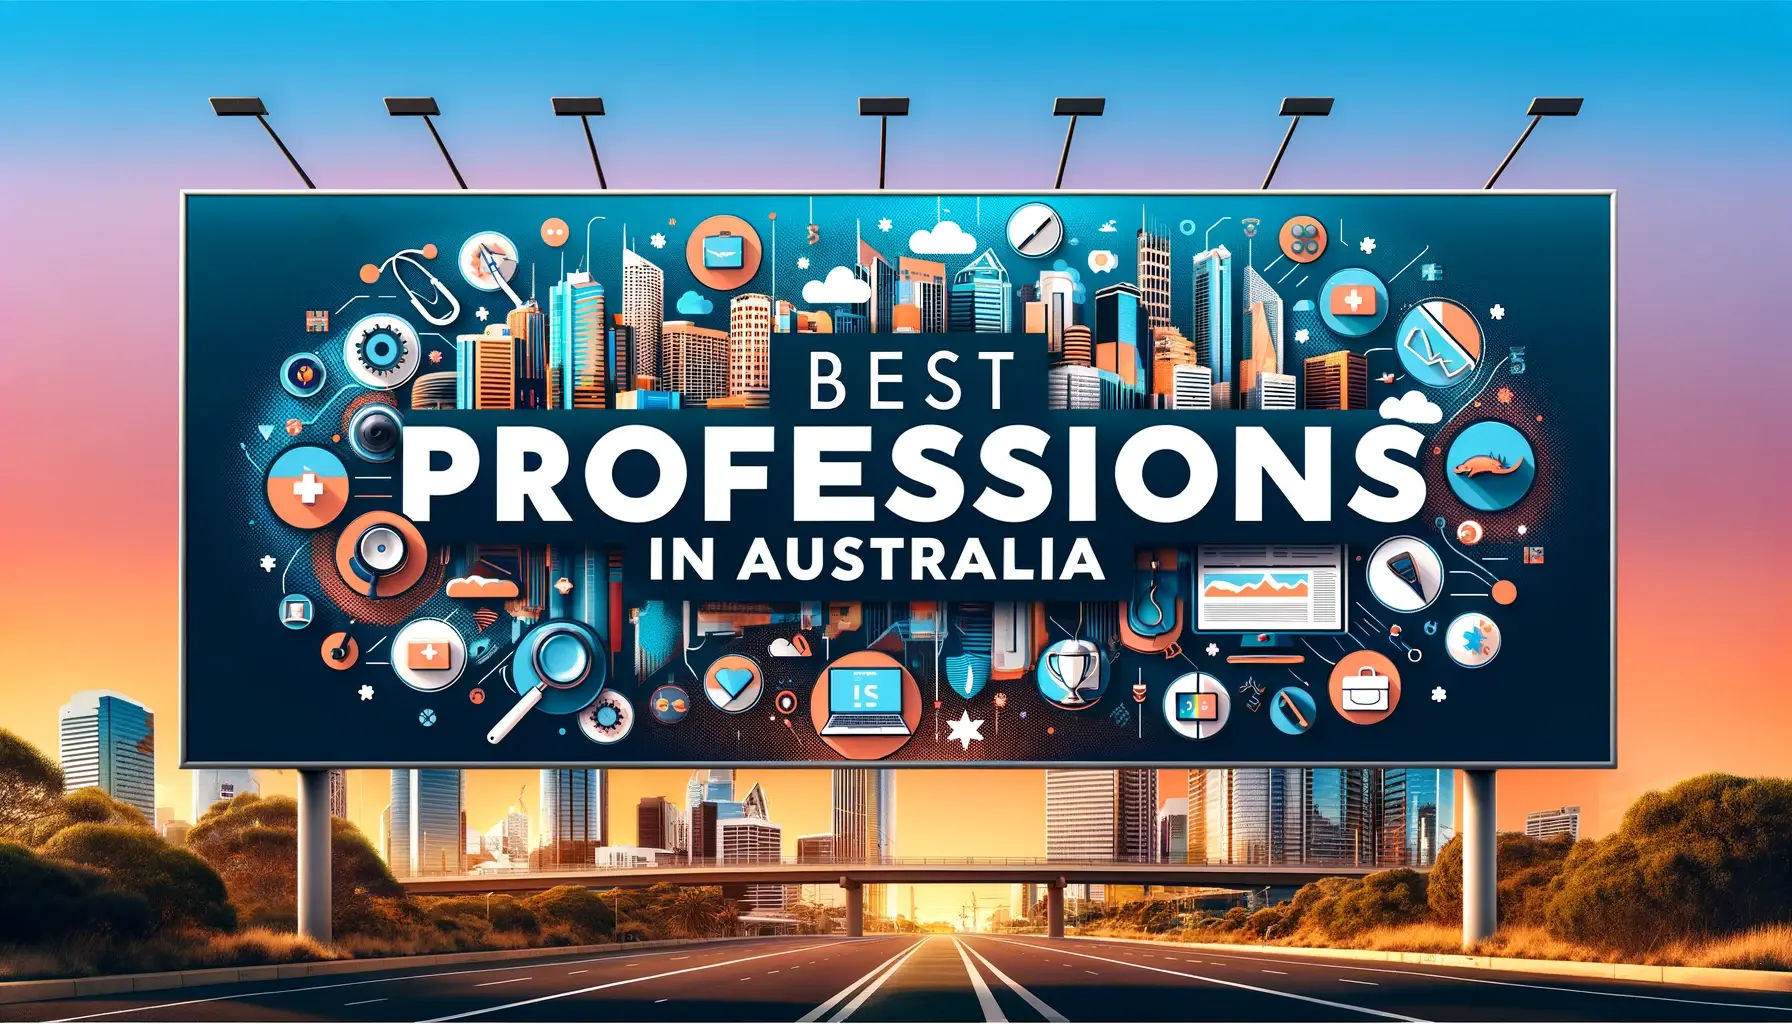 Best professions in Australia